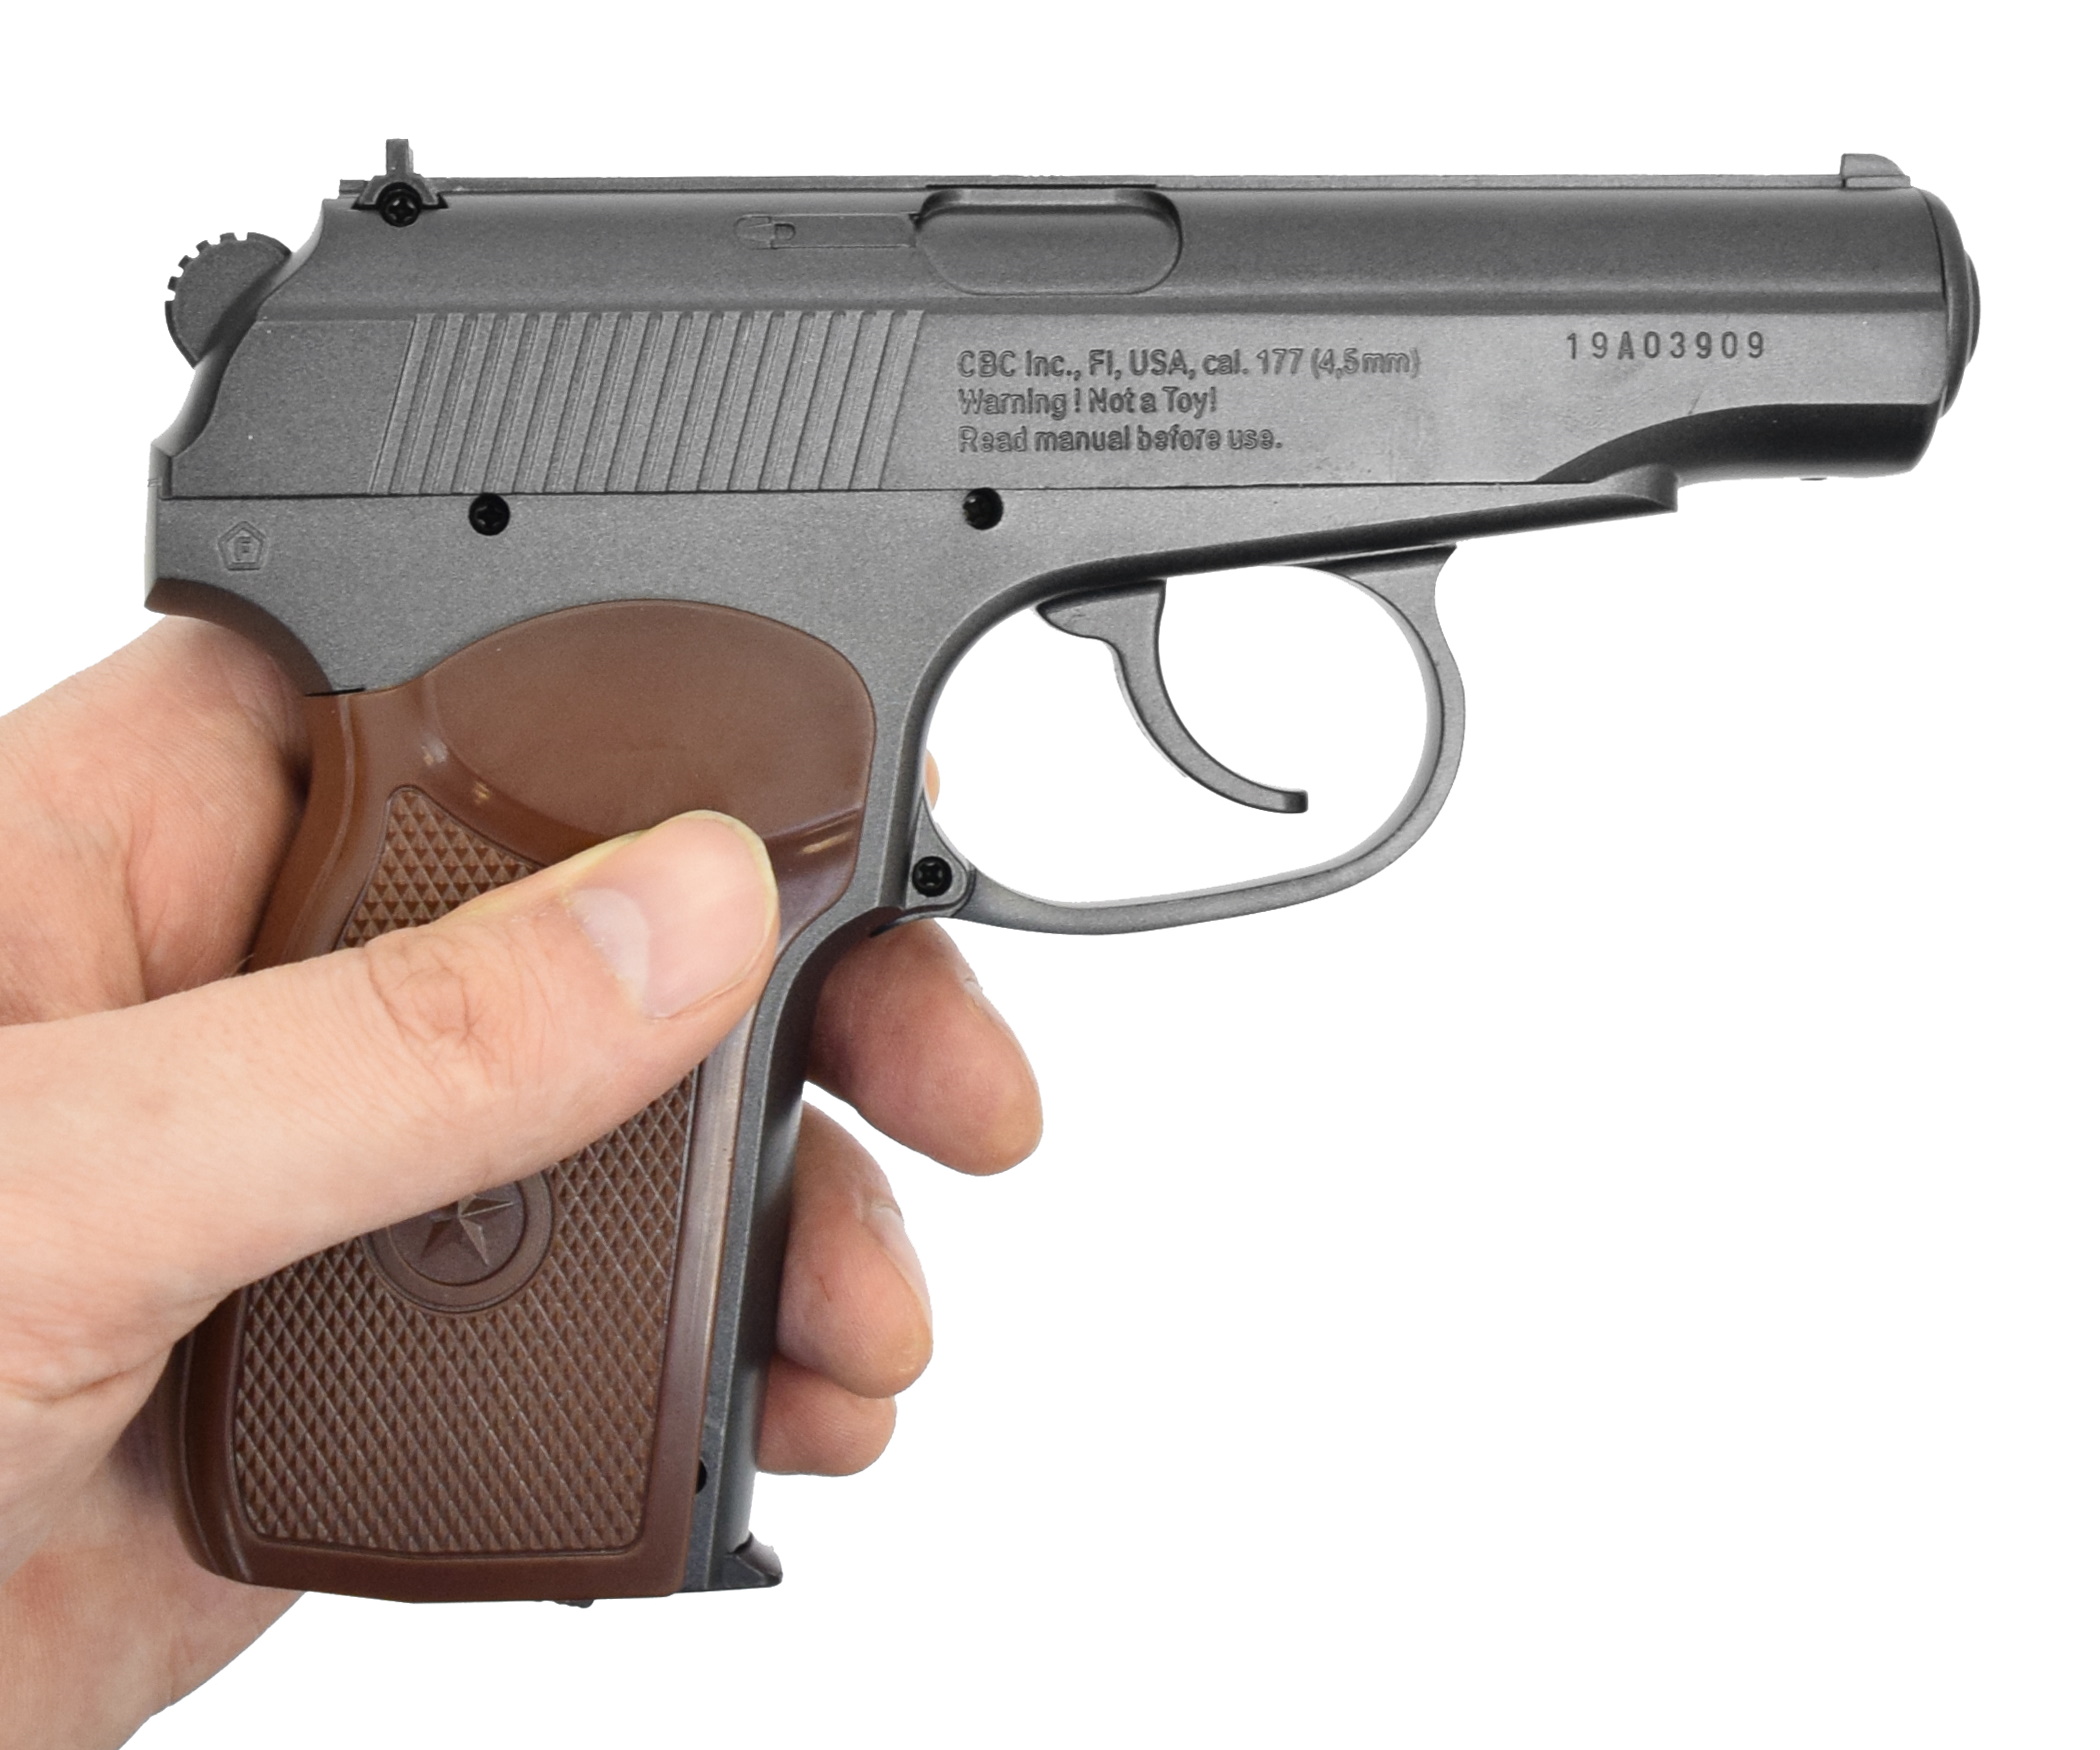 Пистолет пневматический ПМ49, к.4,5мм